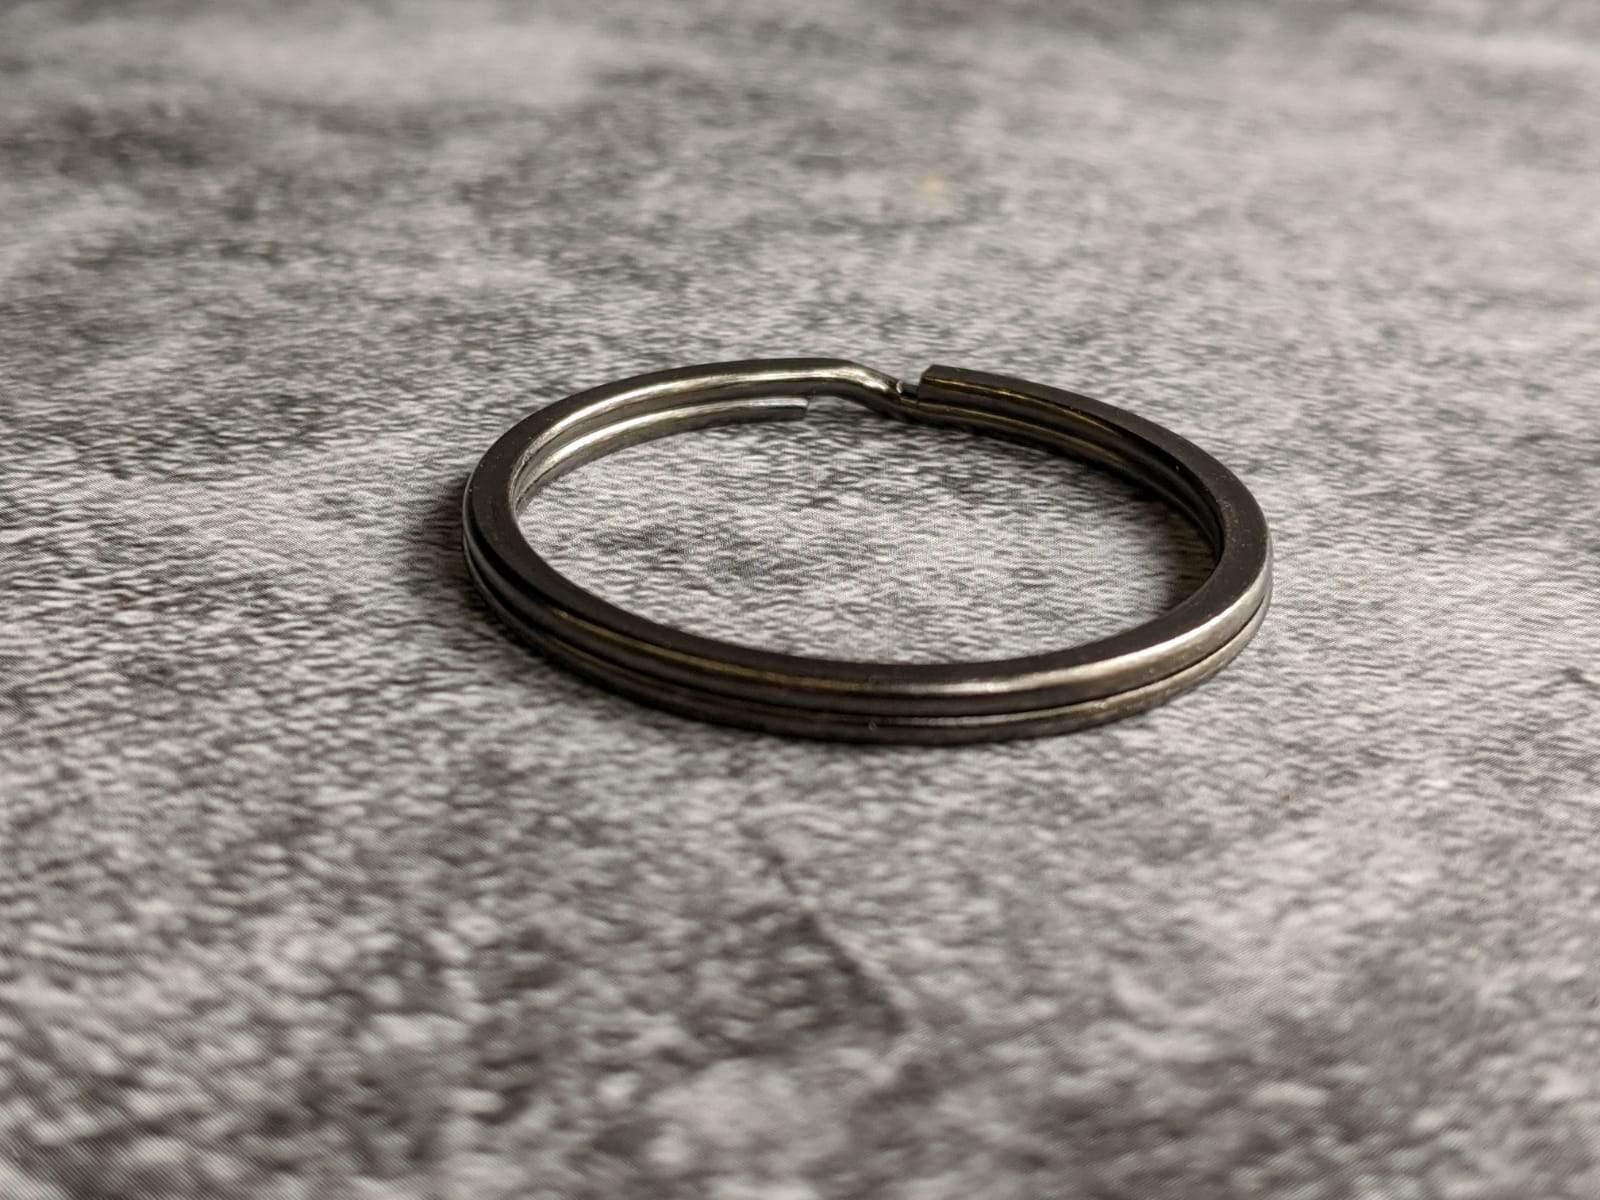 Split Ring 30mm